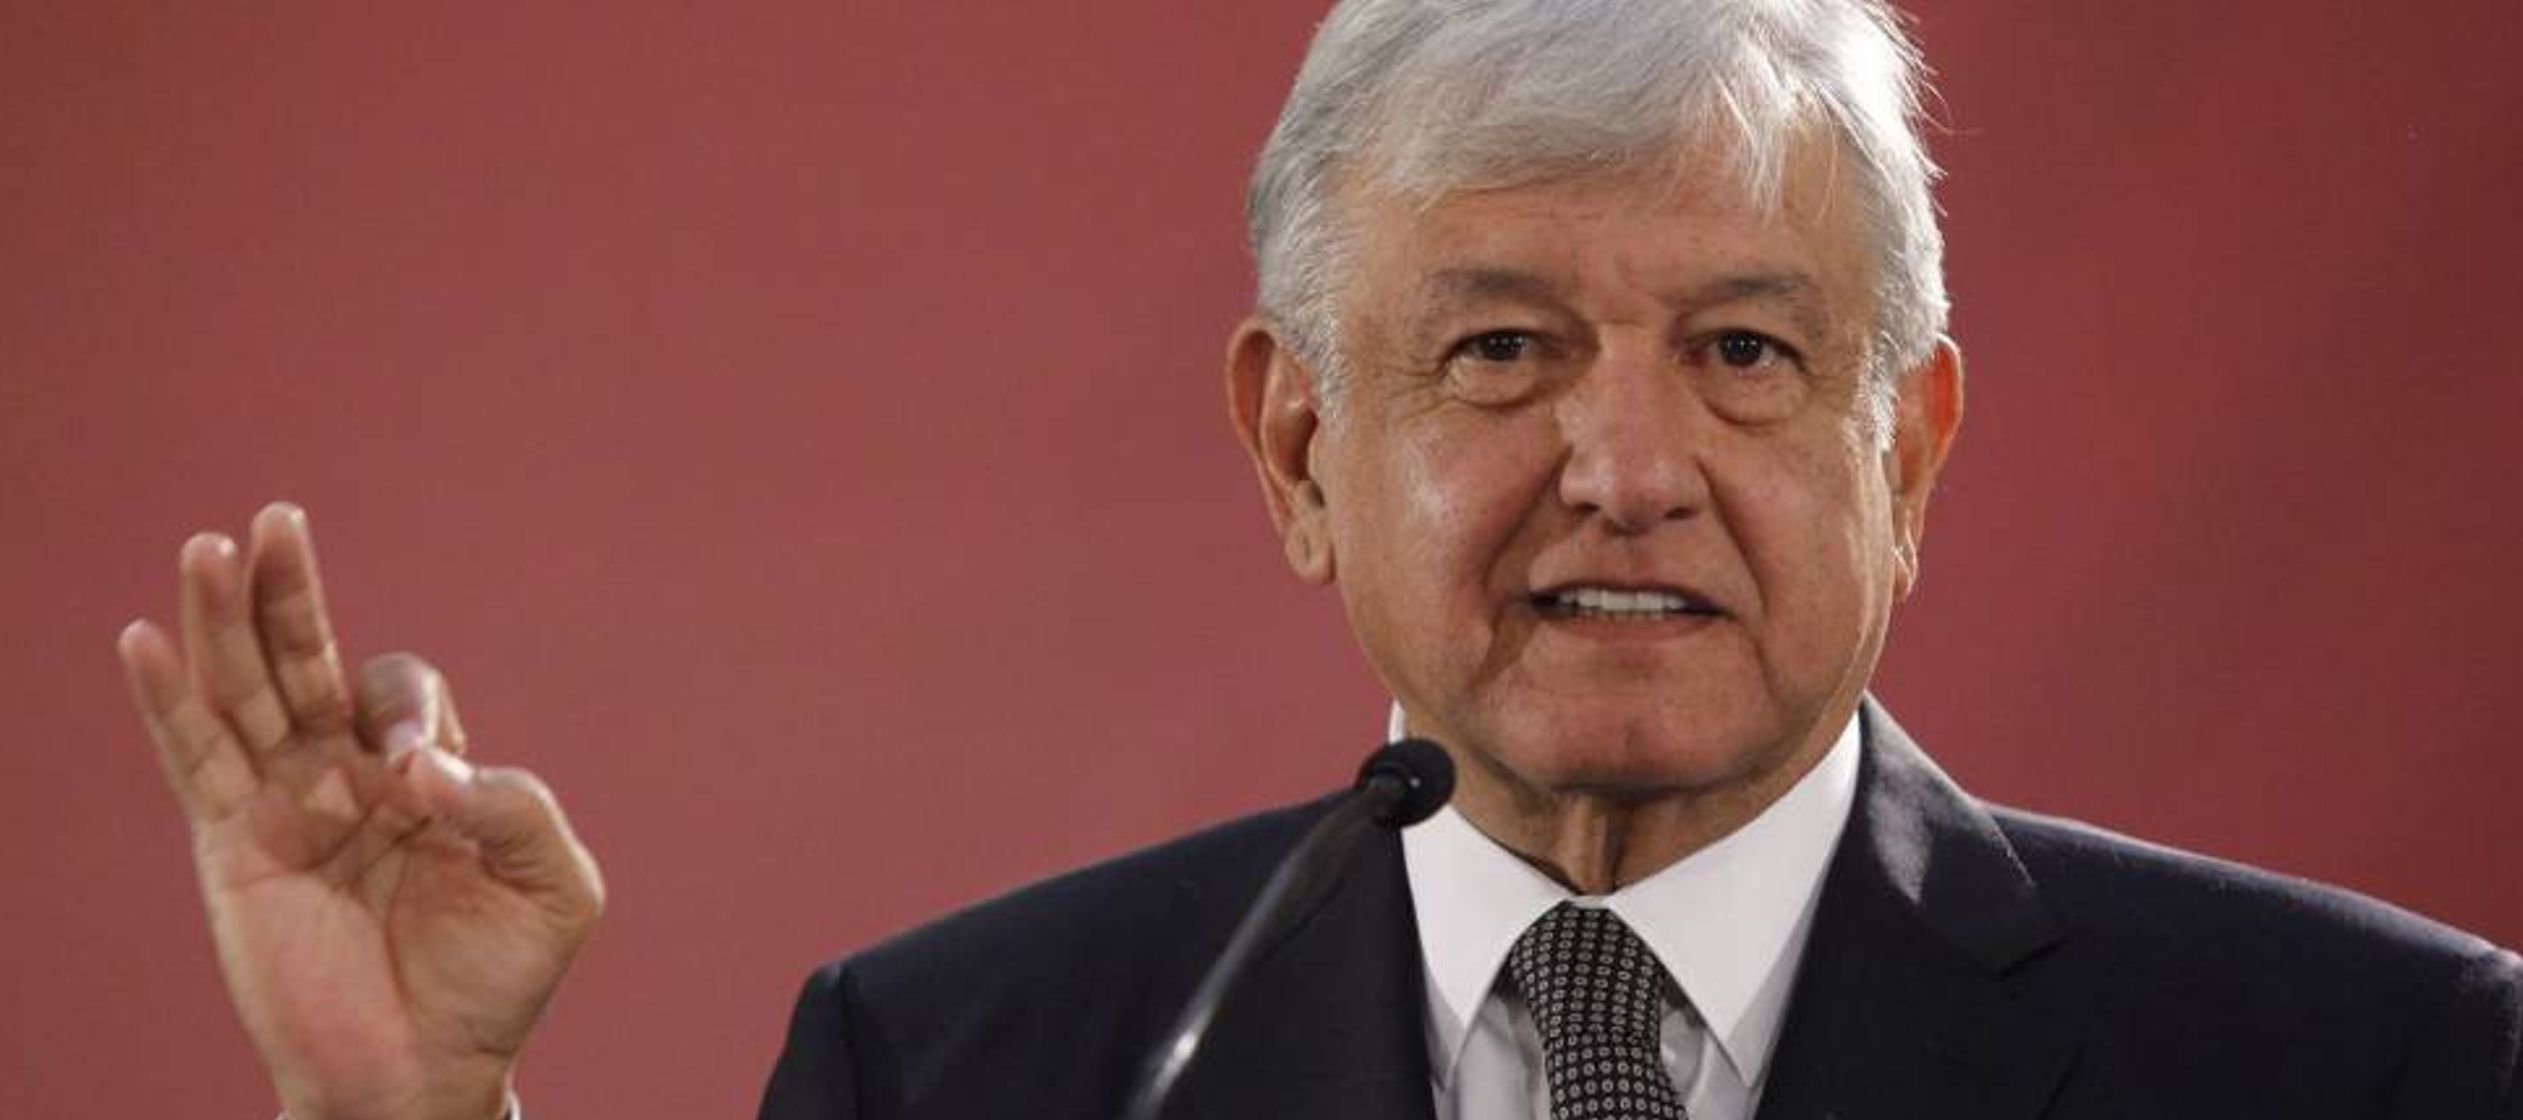 Los mexicanos polemizan sobre López Obrador como lo haría una novia frente al tipo...